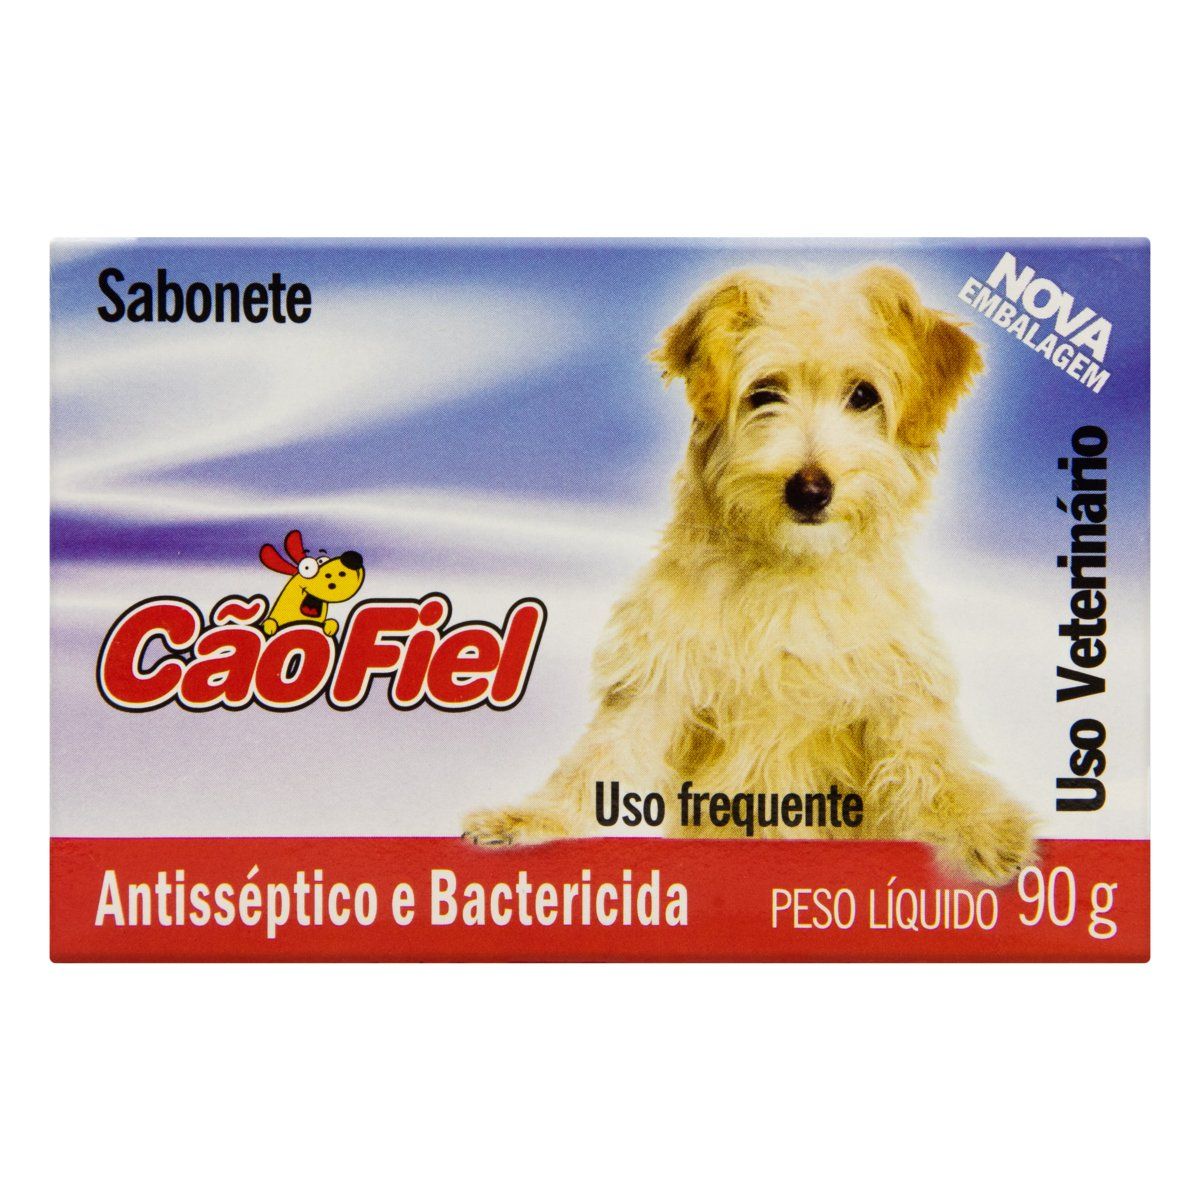 Sabonete Uso Veterinário Cão Fiel Antisséptico e Bactericida 90g